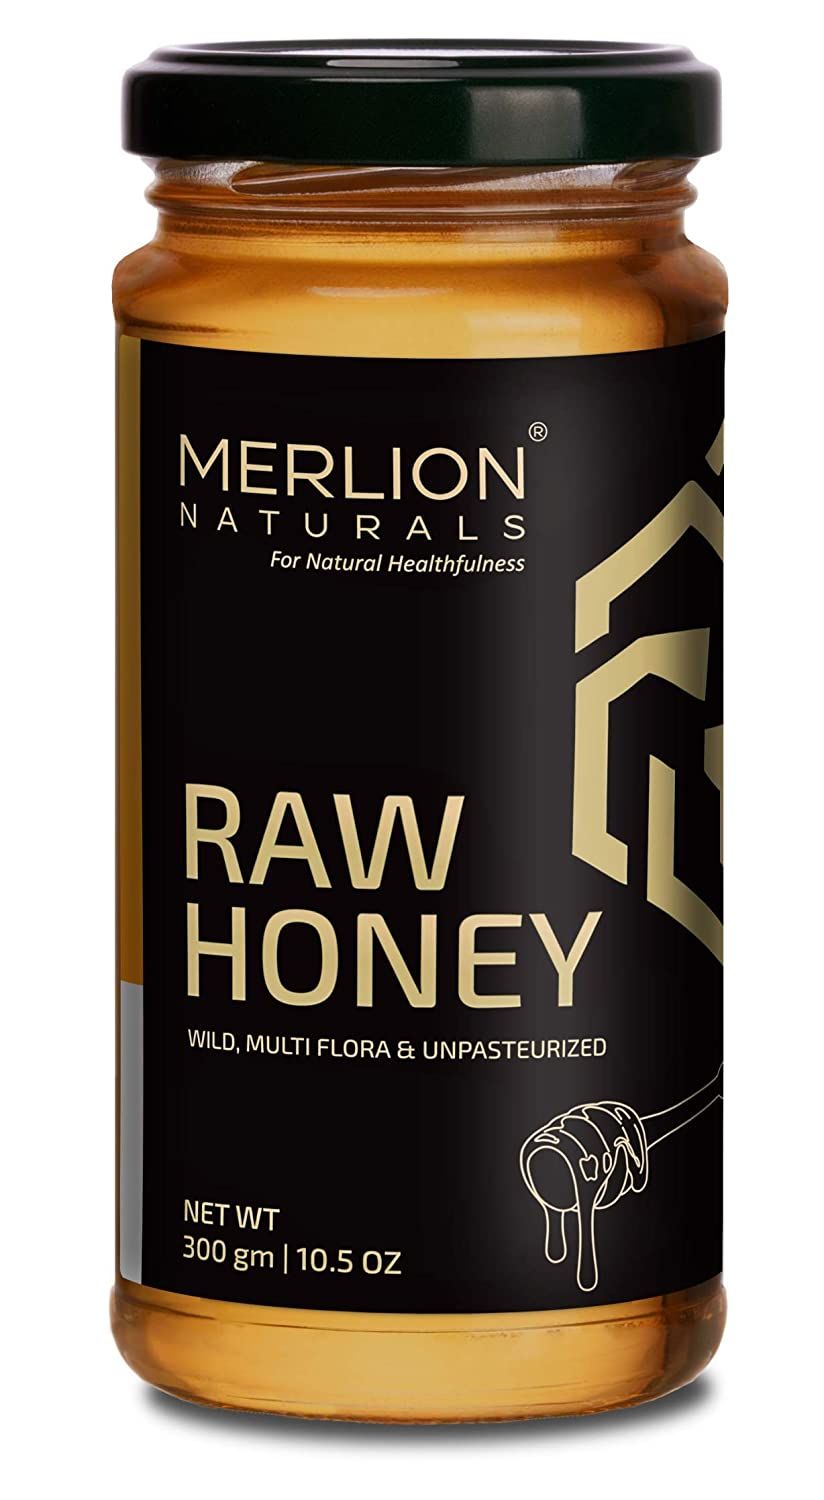 Merlion Naturals Raw Honey Image